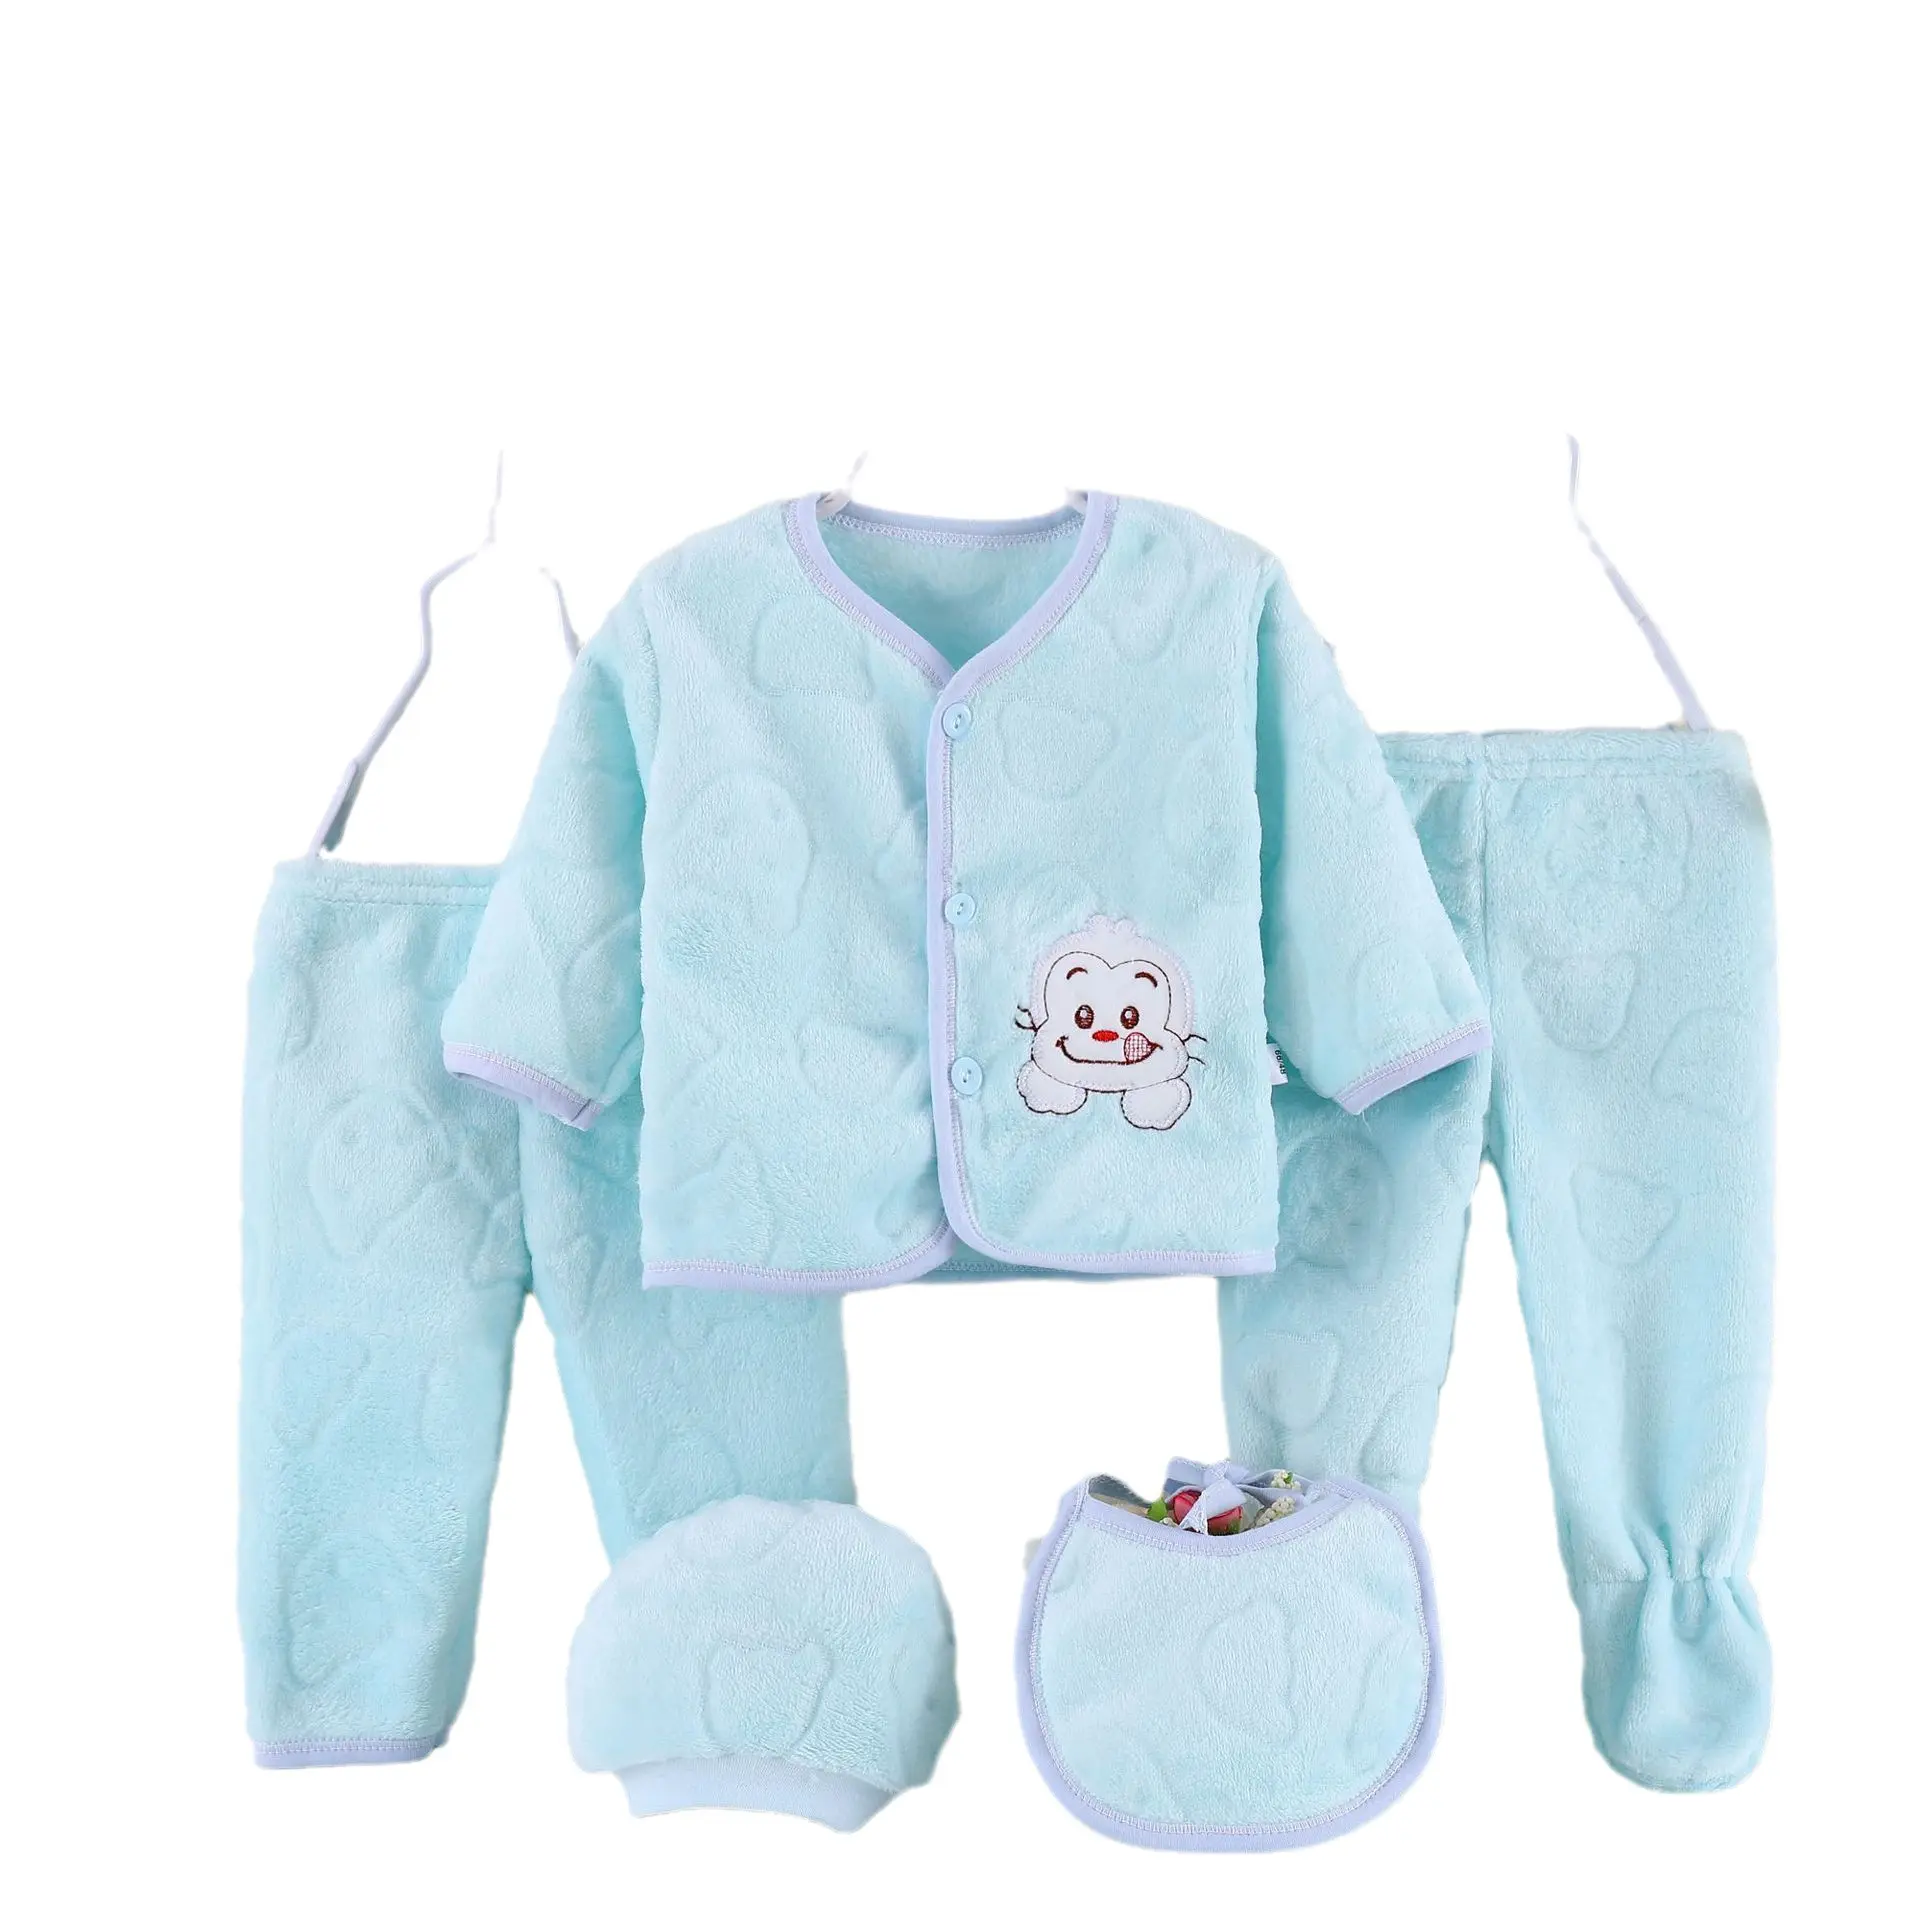 Produits pour nouveau-nés 5 pièces vêtements essentiels pour bébés vente en gros de layette mignonne d'hiver coffret cadeau